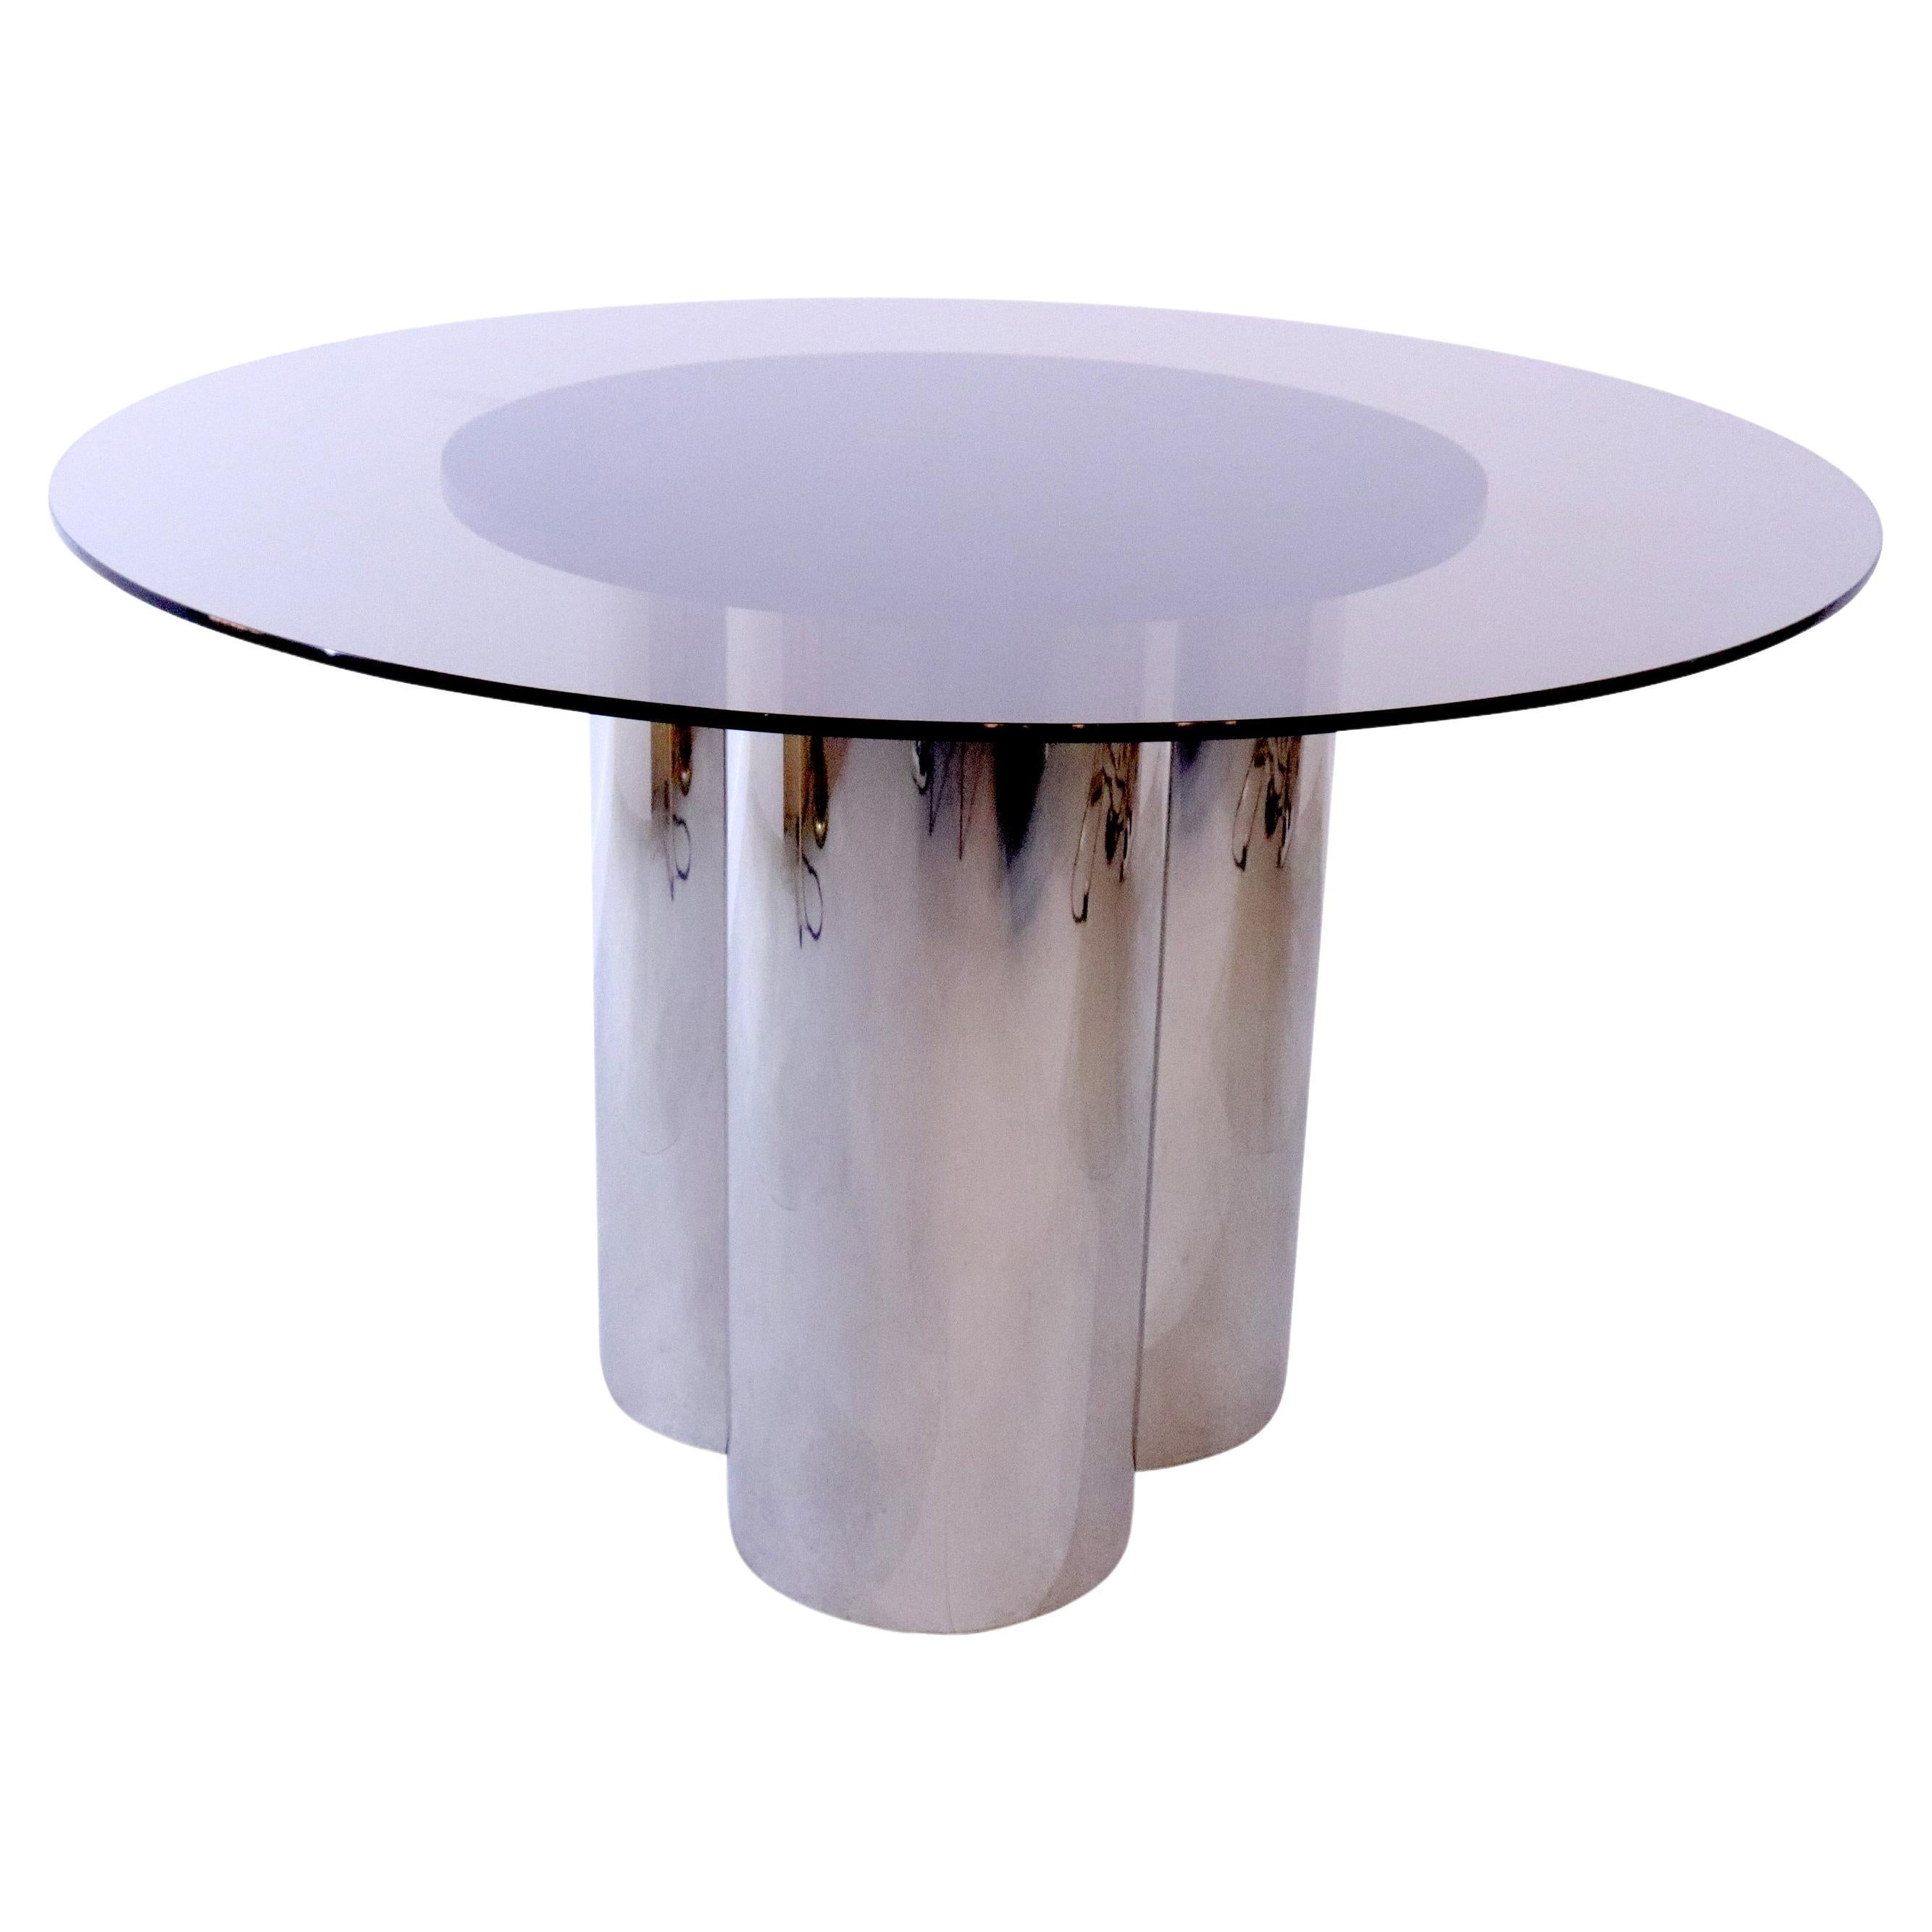 Italian Smoked Glass Circular Dining Table Set on a Tubular Chrome Base, 1970s